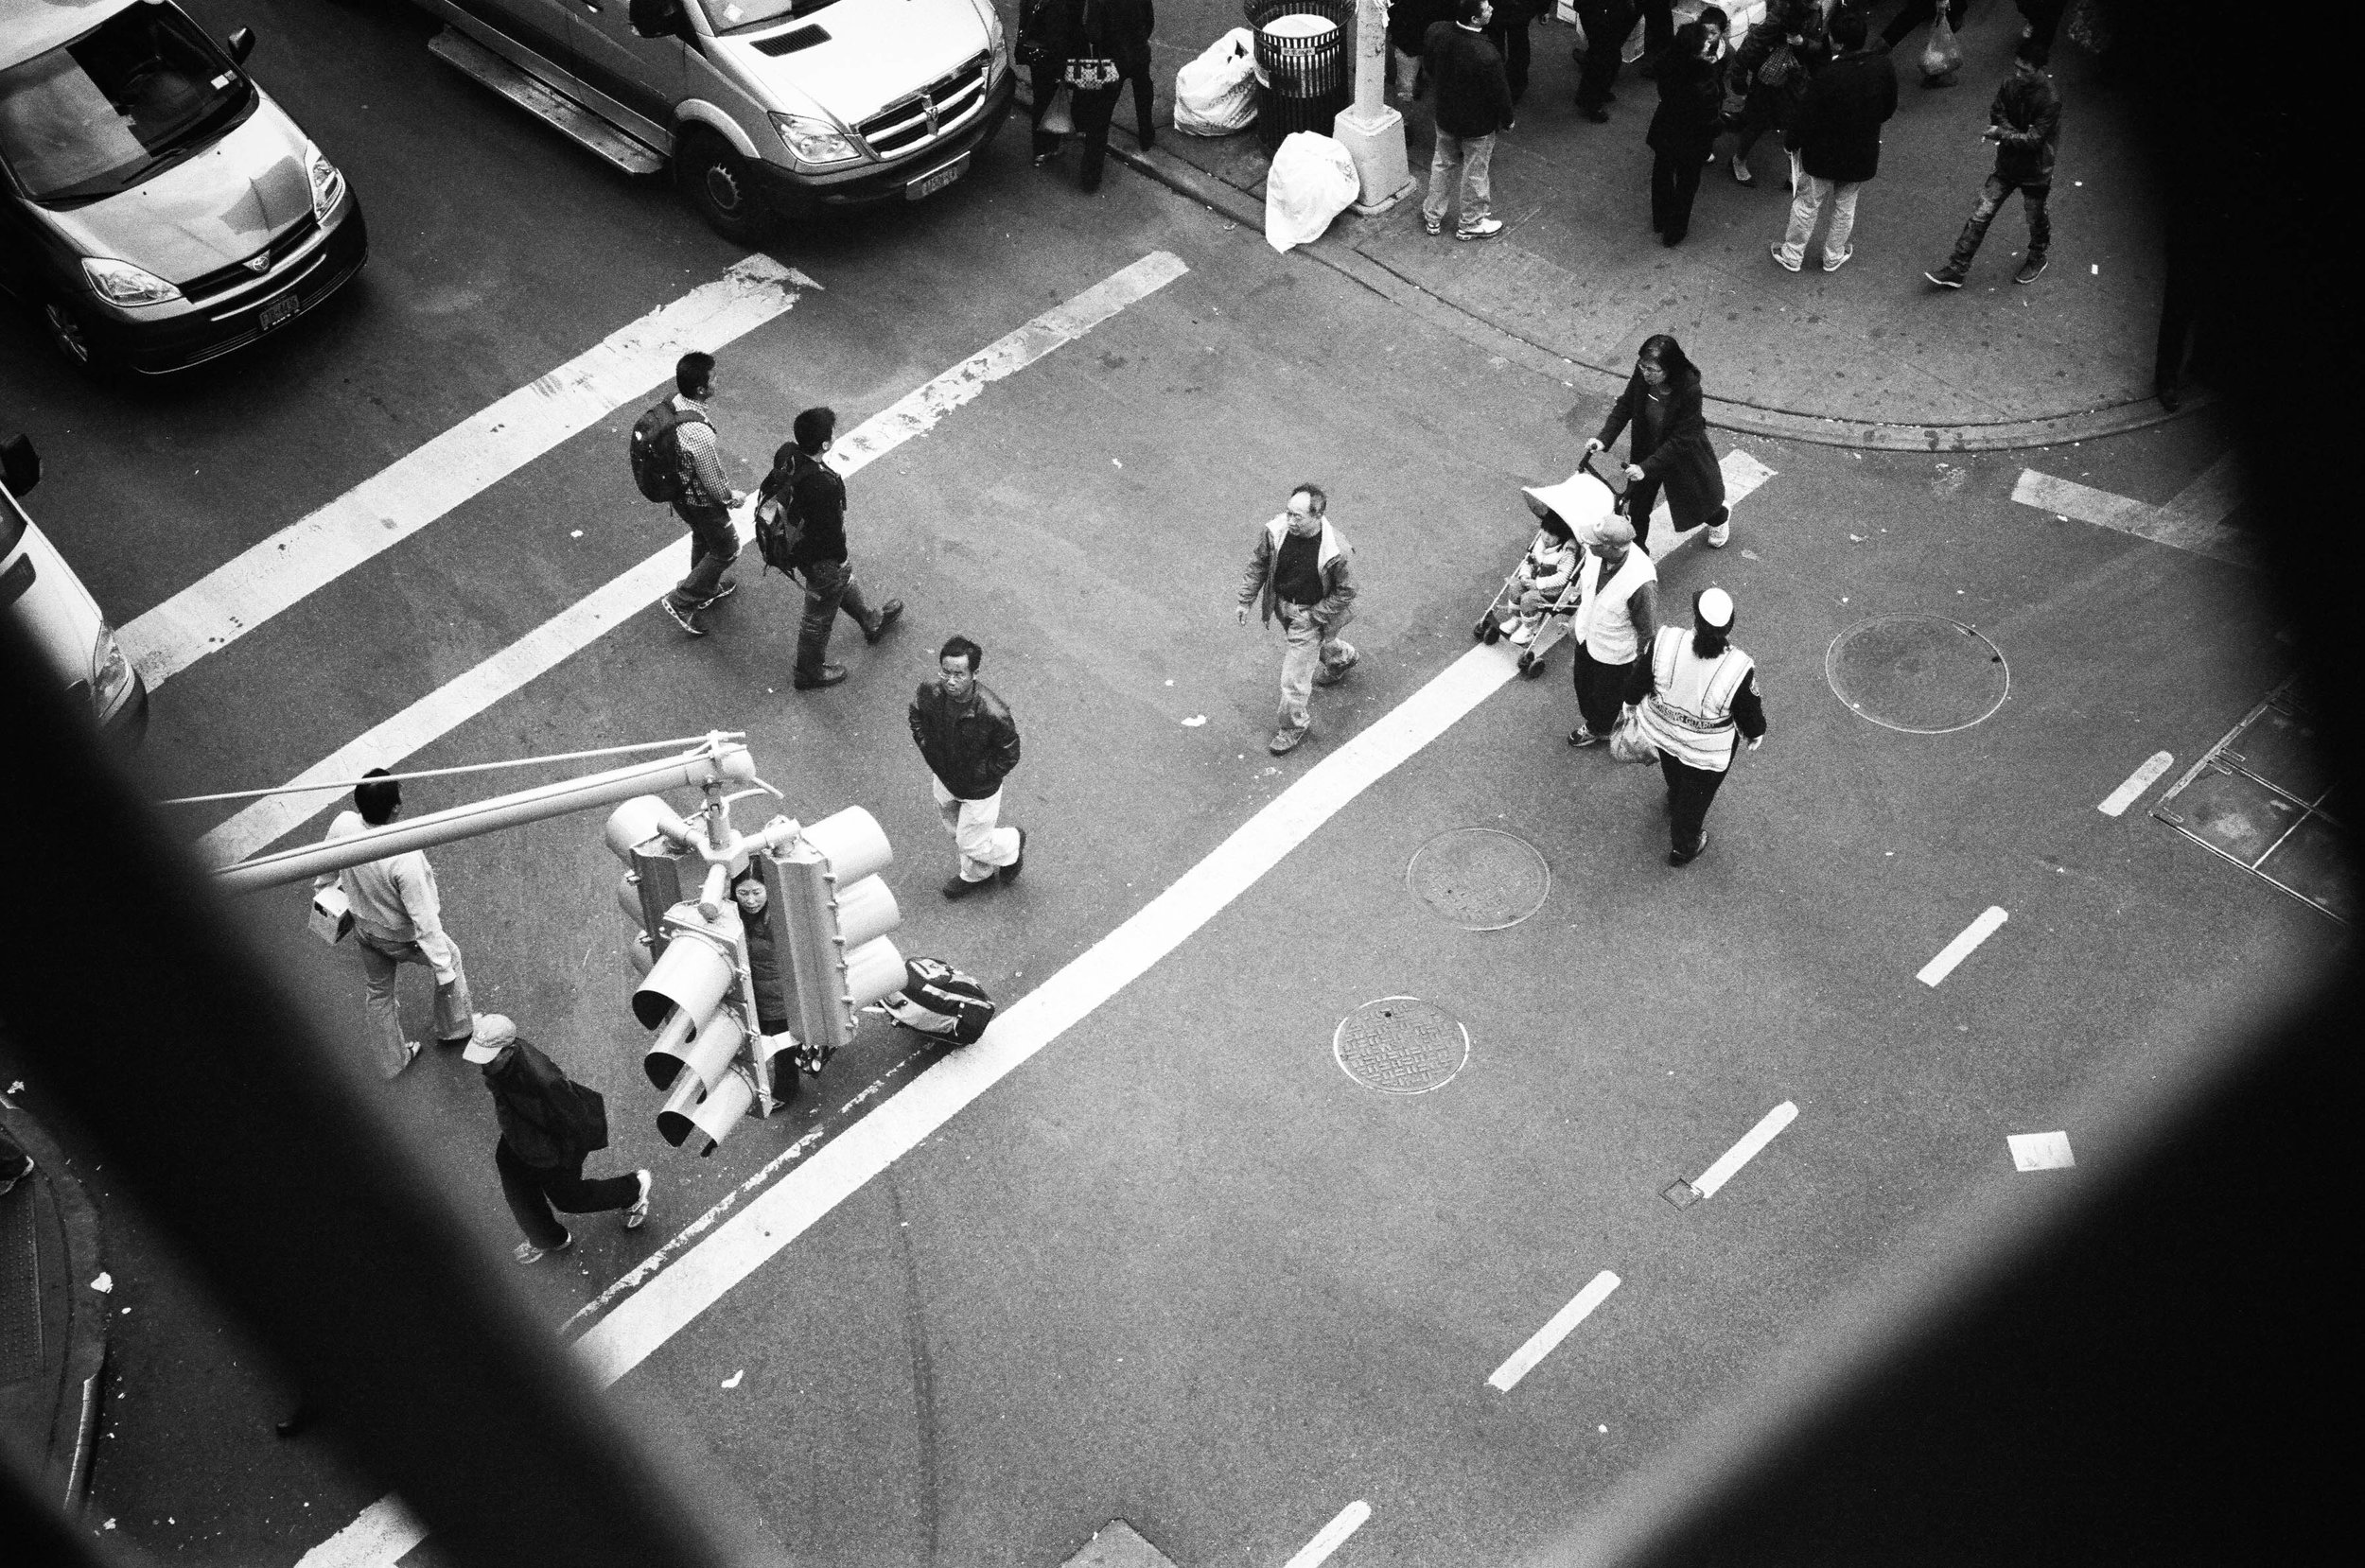   Pedestrians cross Division Street in Chinatown.  